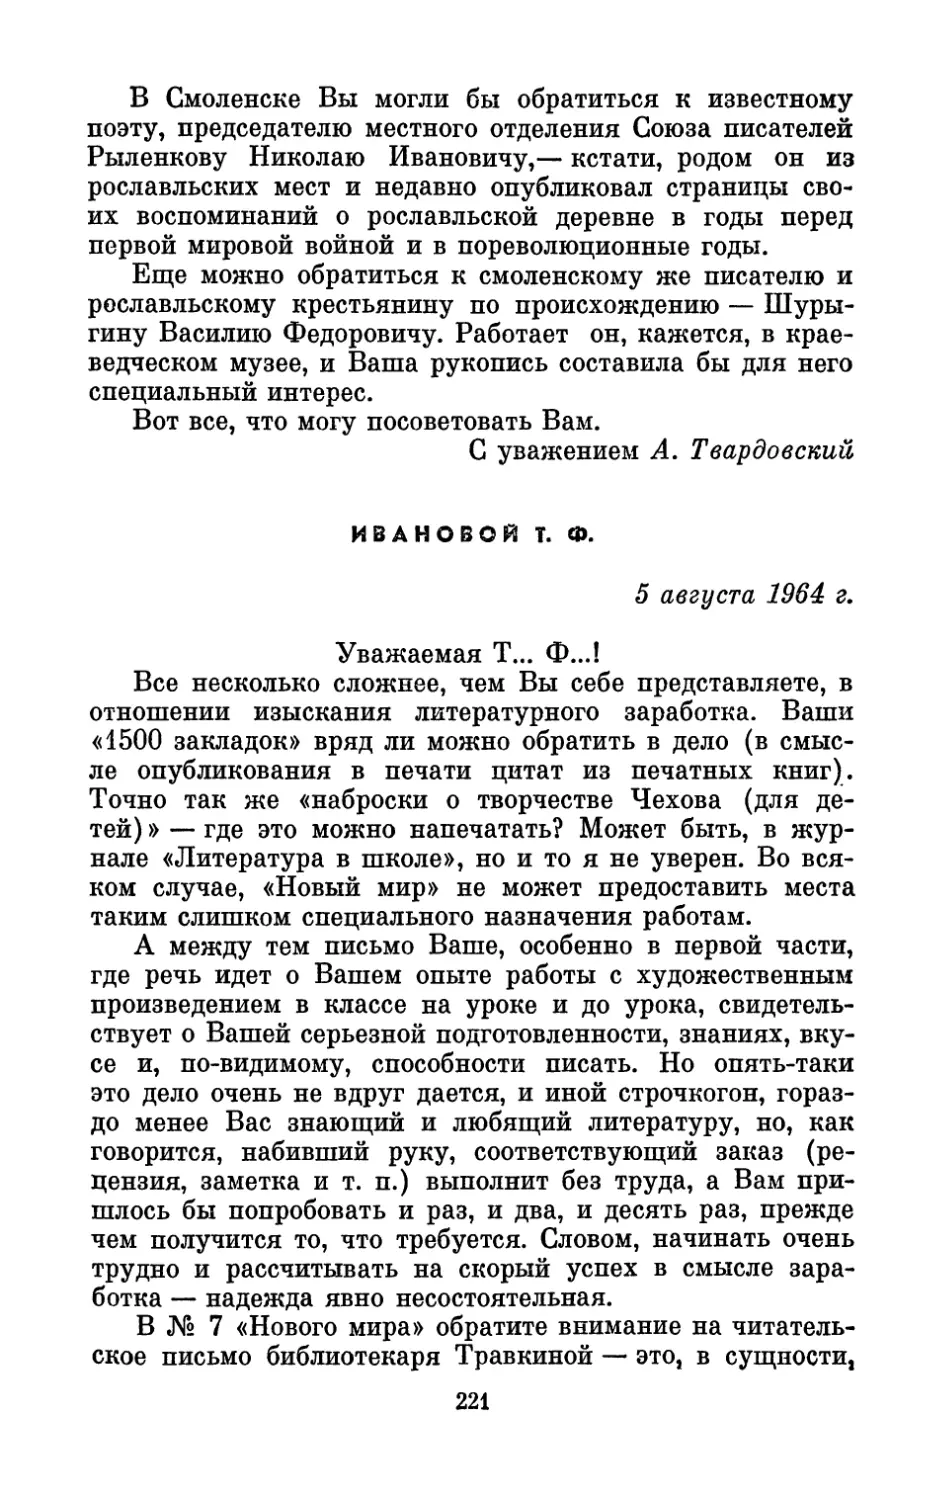 Ивановой Т. Ф., 5 августа 1964 г.